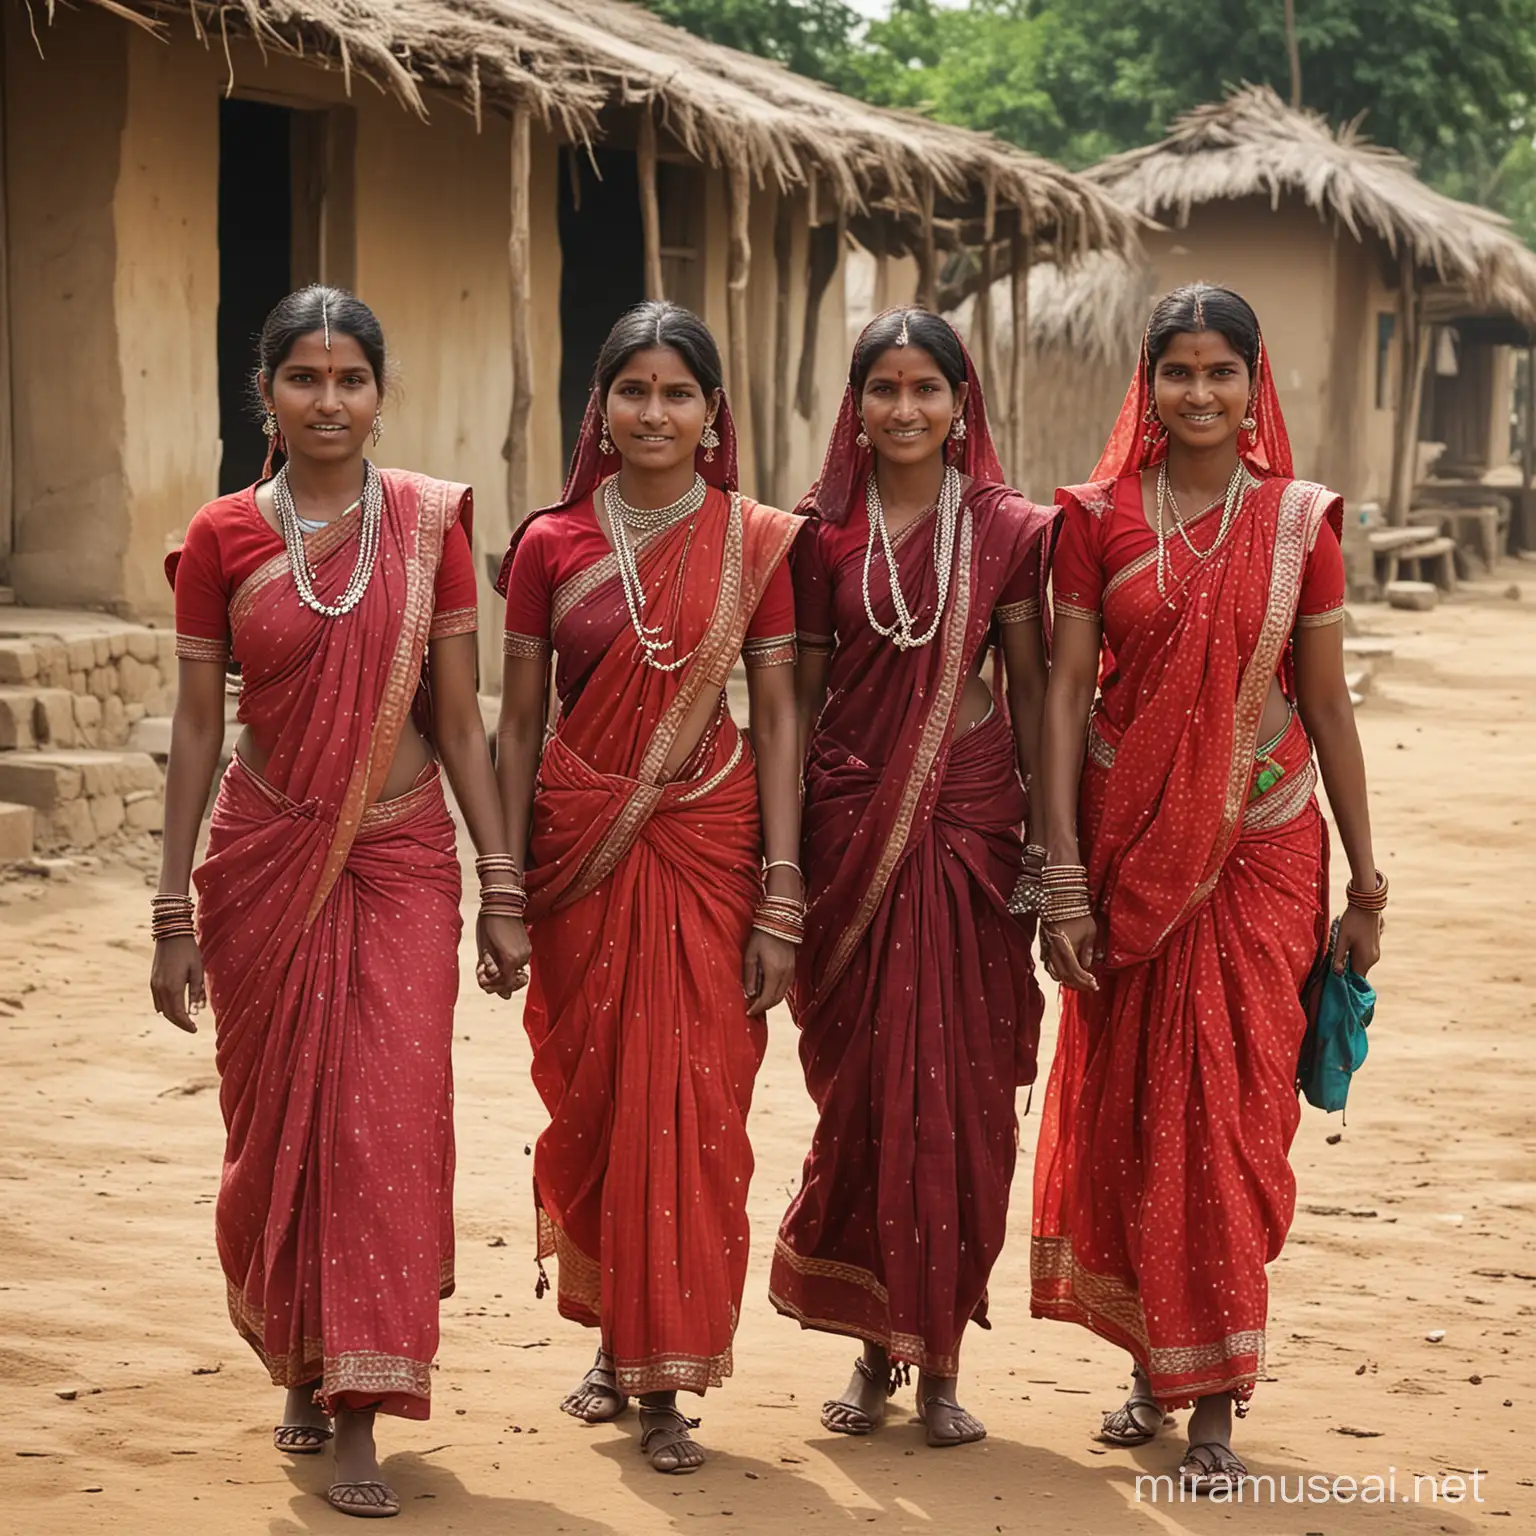 Indian village women

